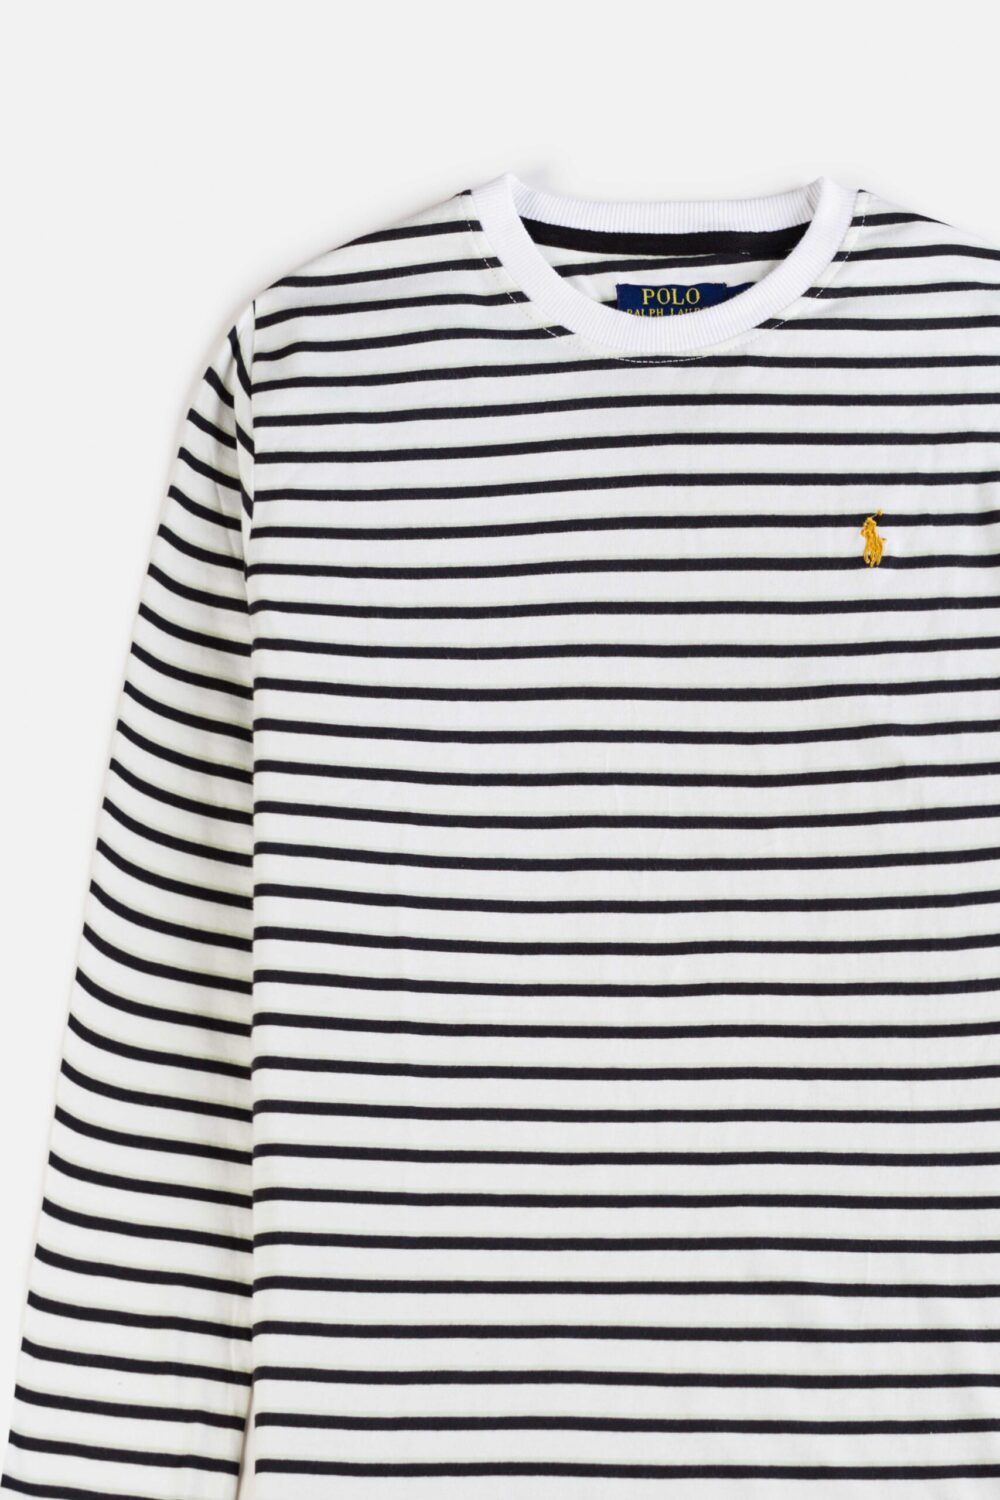 RL Premium Winter Full T Shirt – Black & Green Stripes